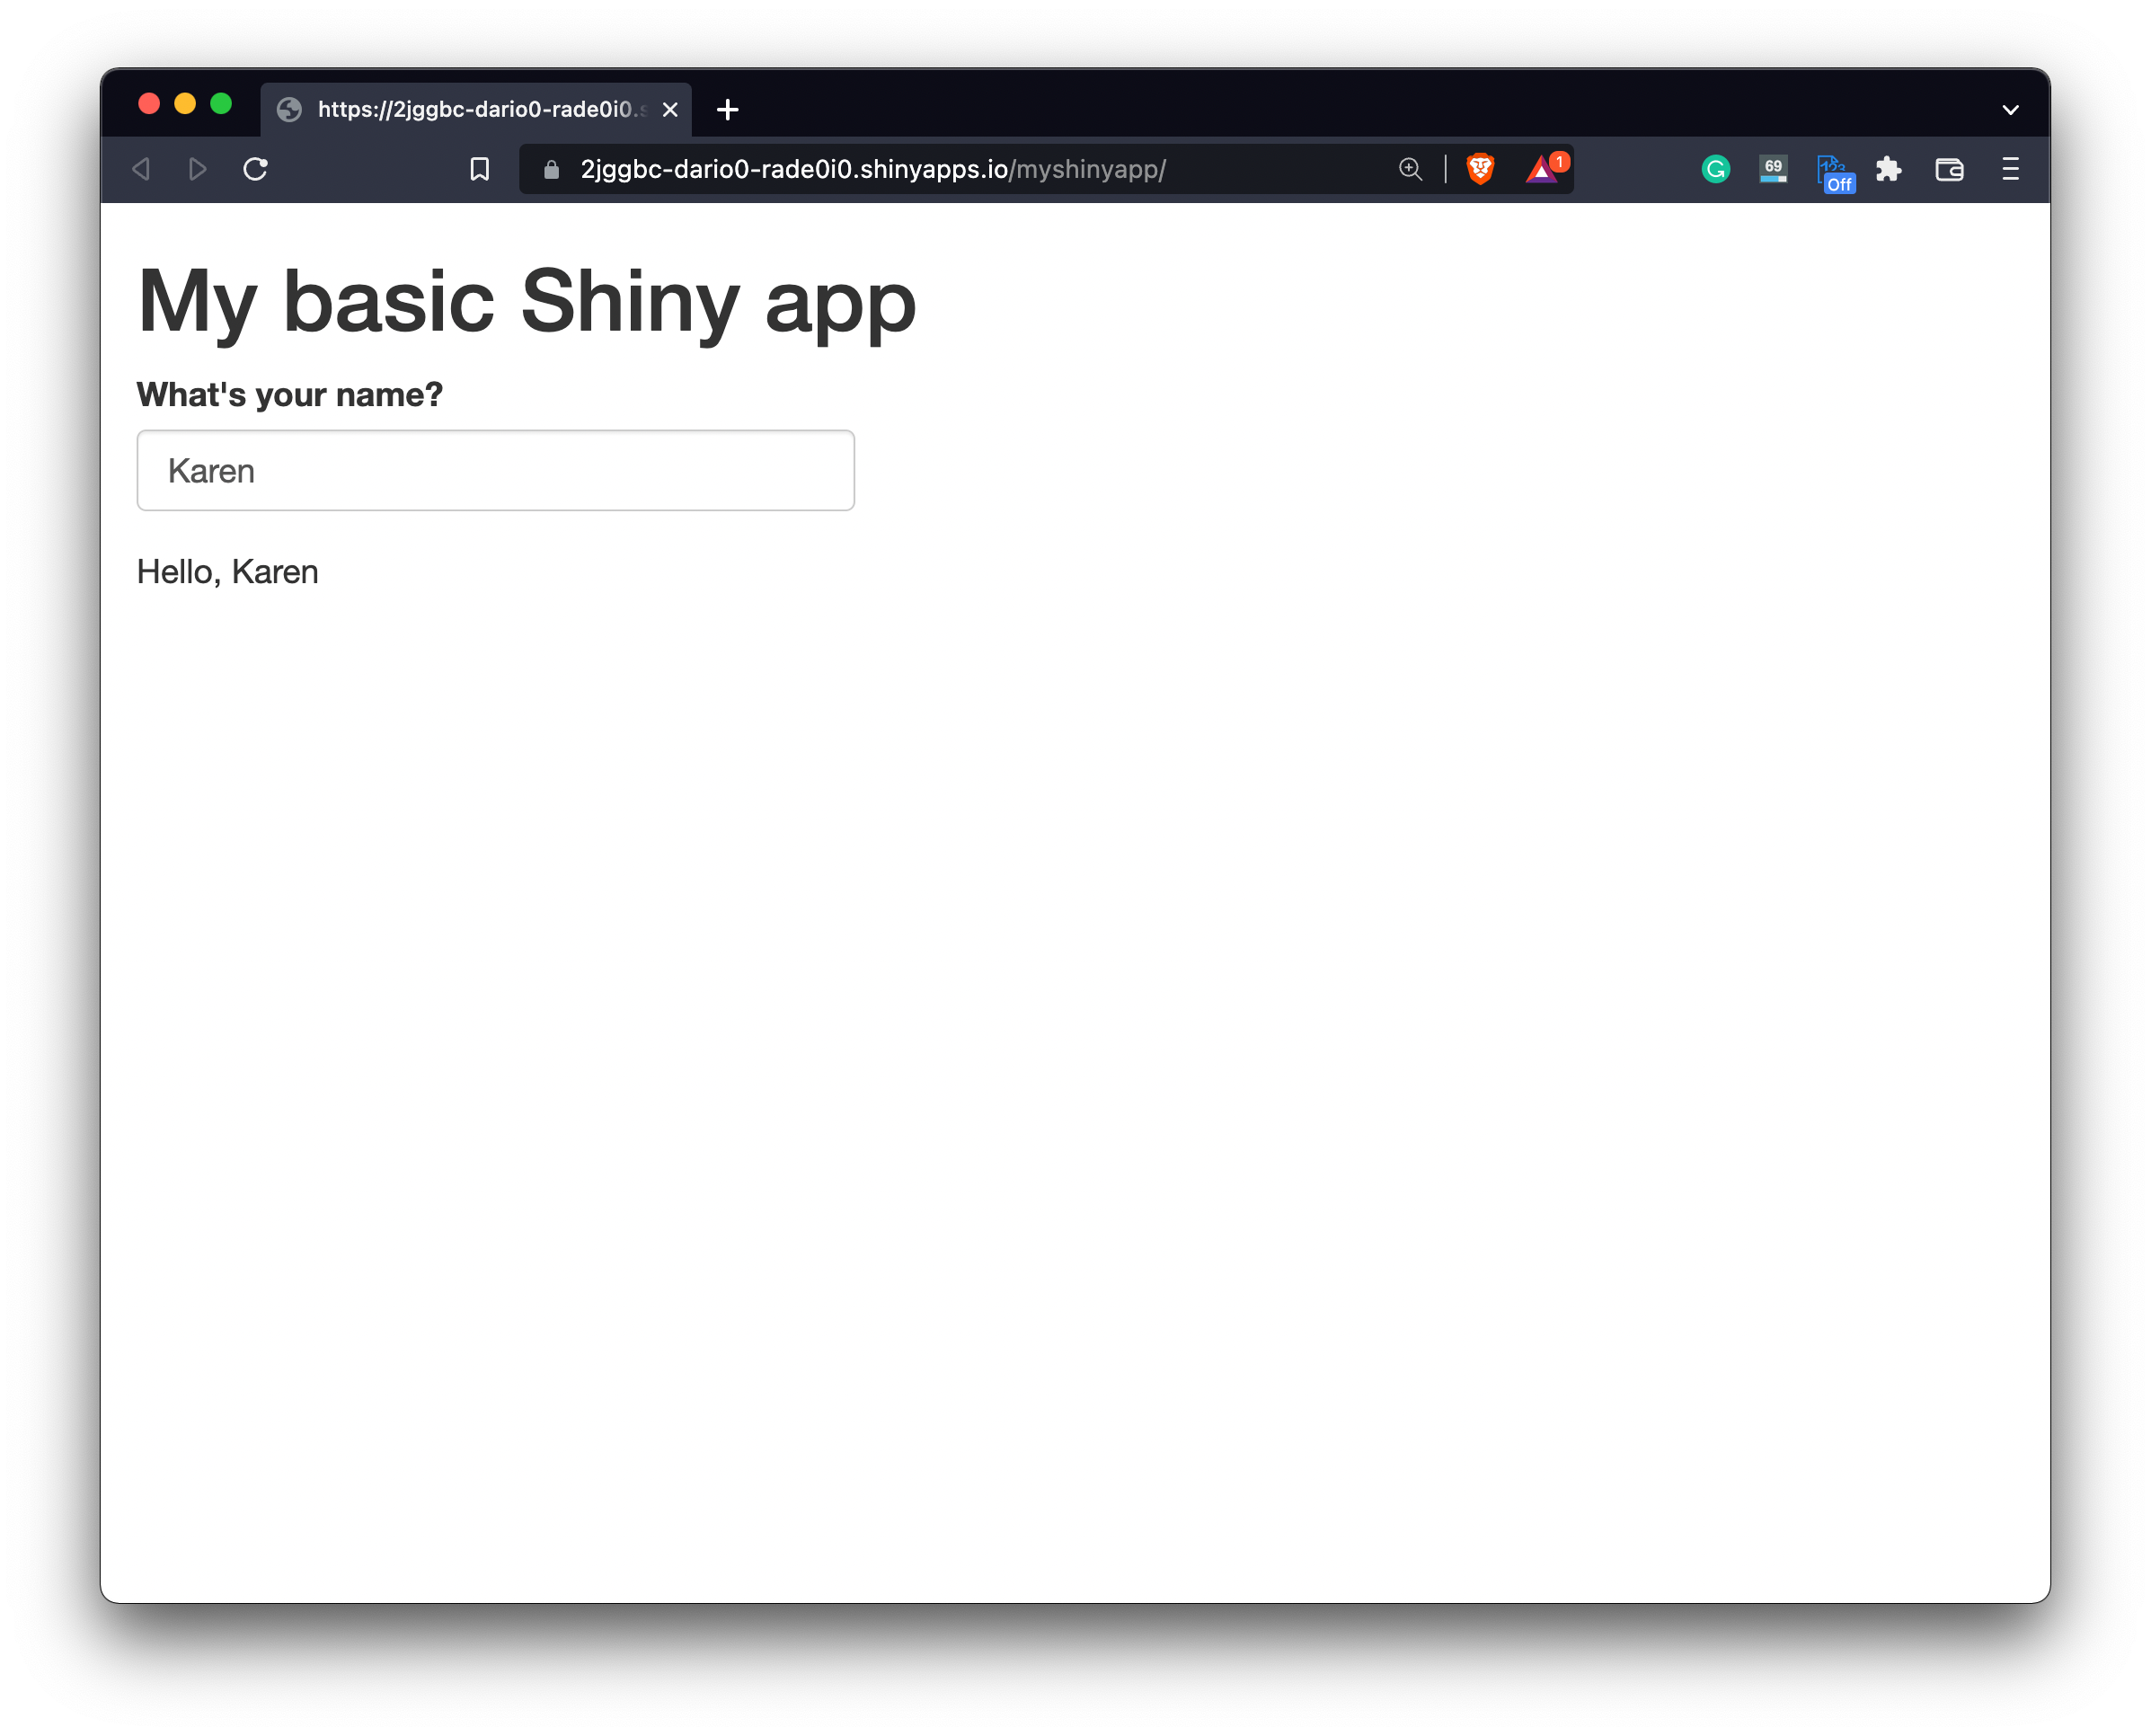 Image 5 - Deployed R Shiny app on ShinyApps.io